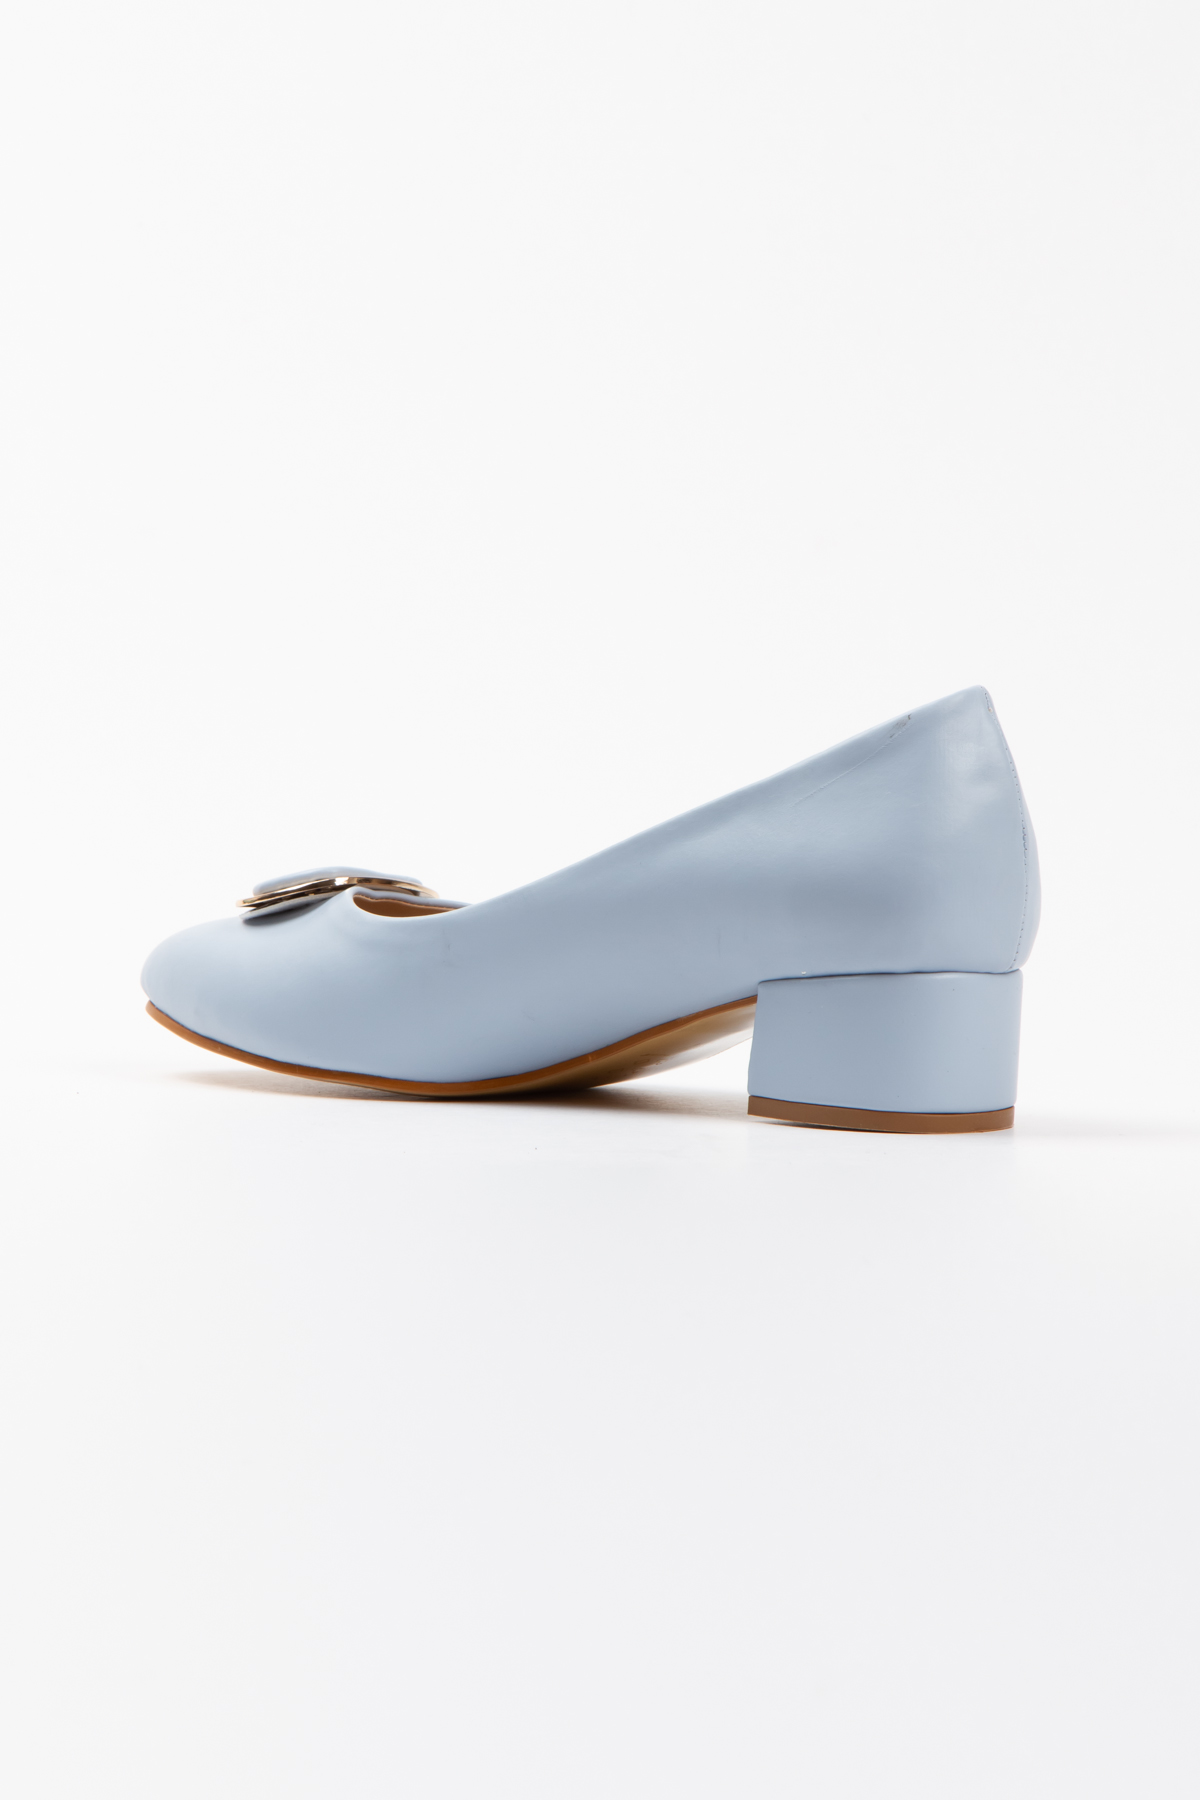 Kadın Mavi Suni Deri Kısa Topuklu Stiletto Tokalı